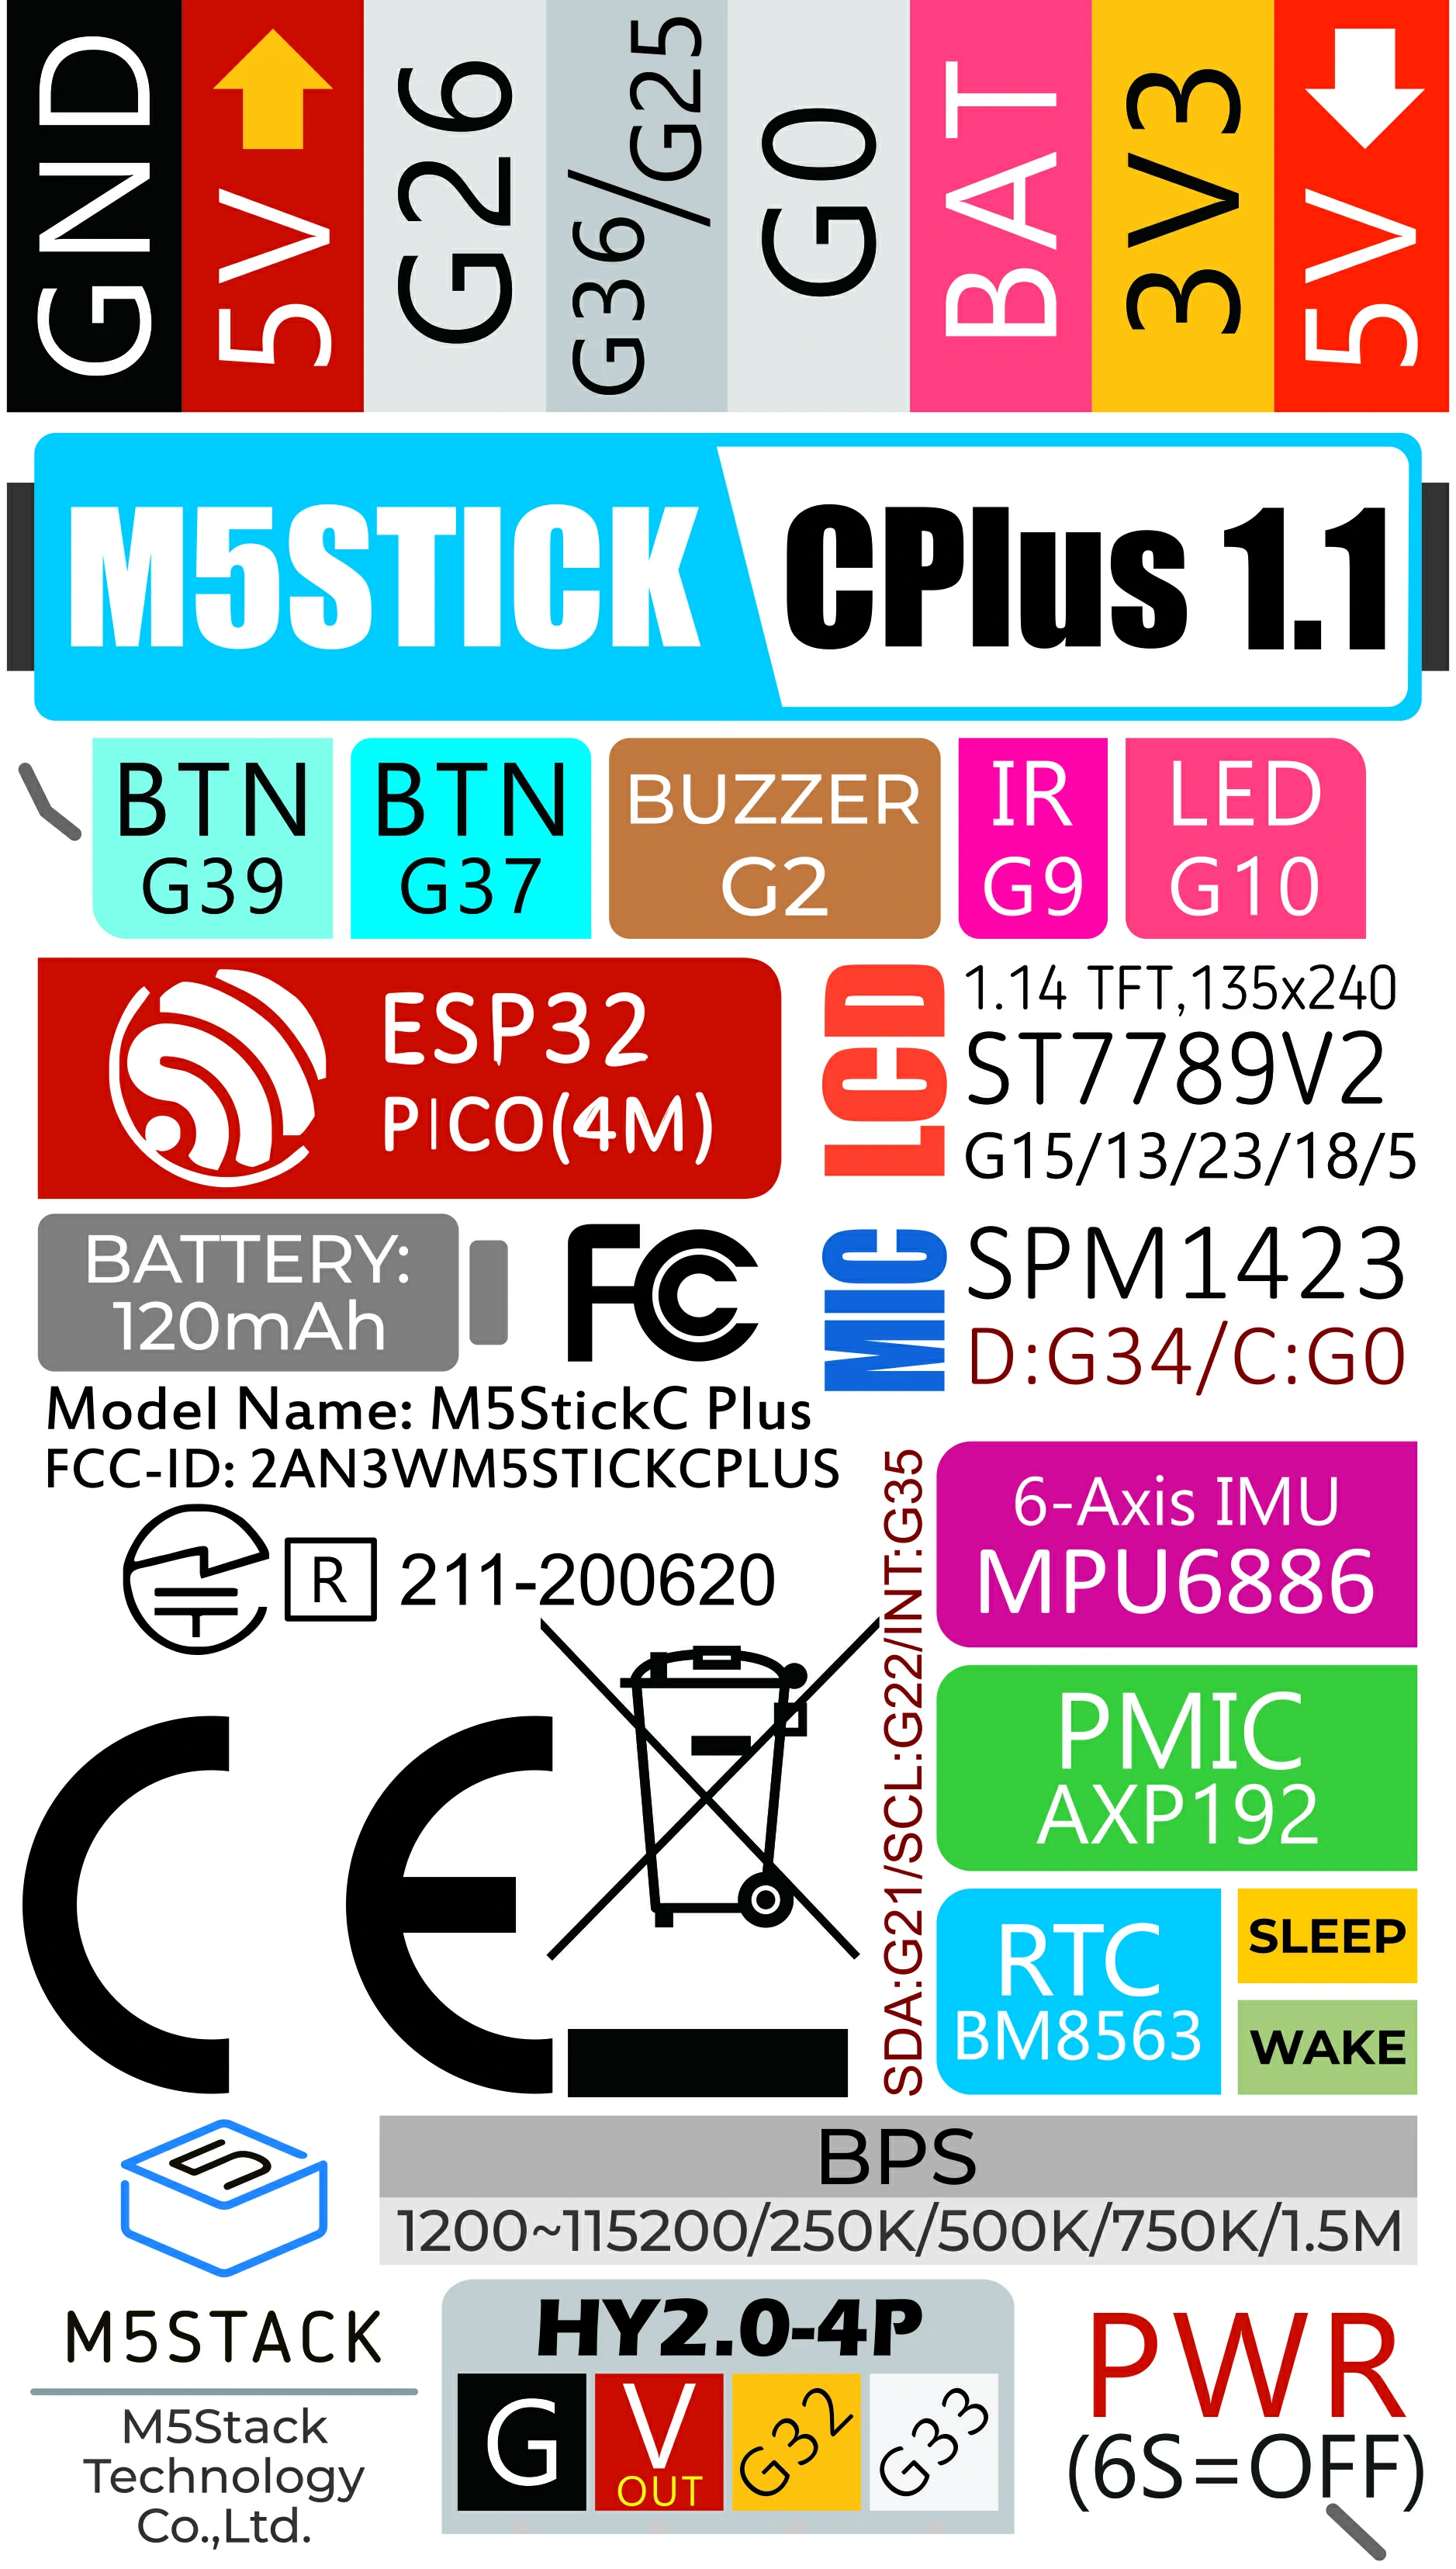 M5 StickC Plus, 3D CAD Model Library